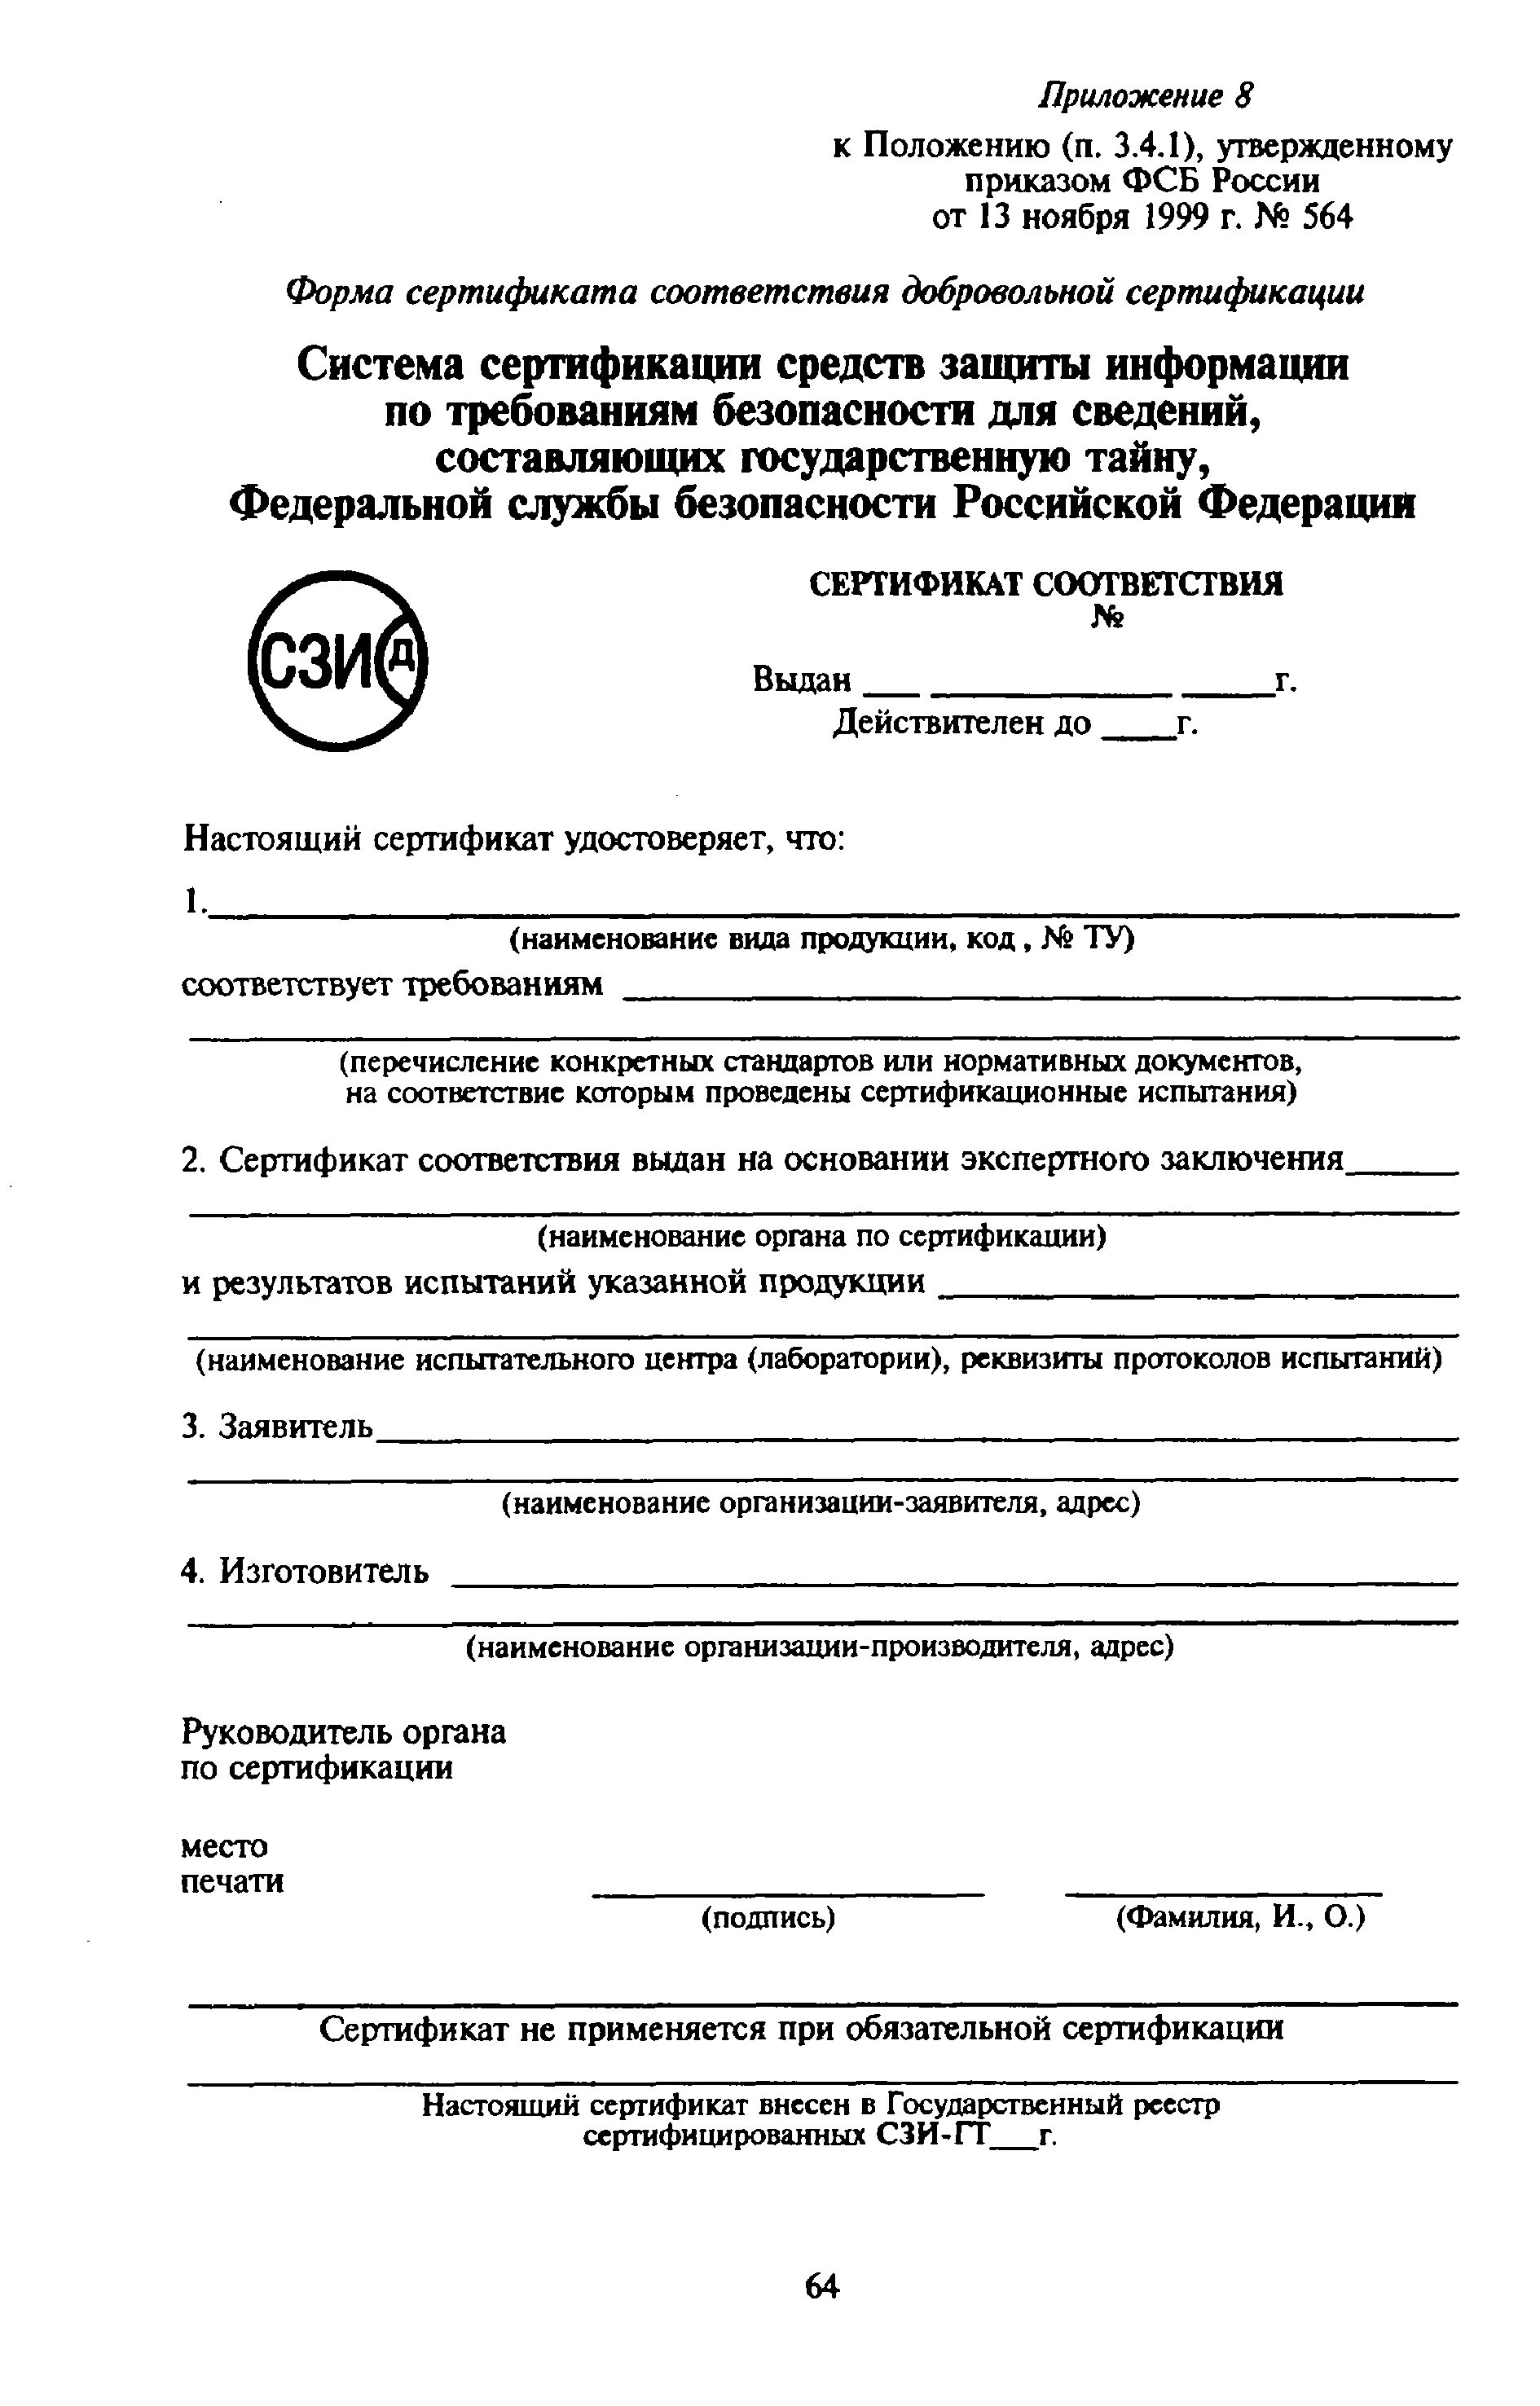 Сертификация средств защиты информации. Сертификат СЗИ. 564 Приказ.